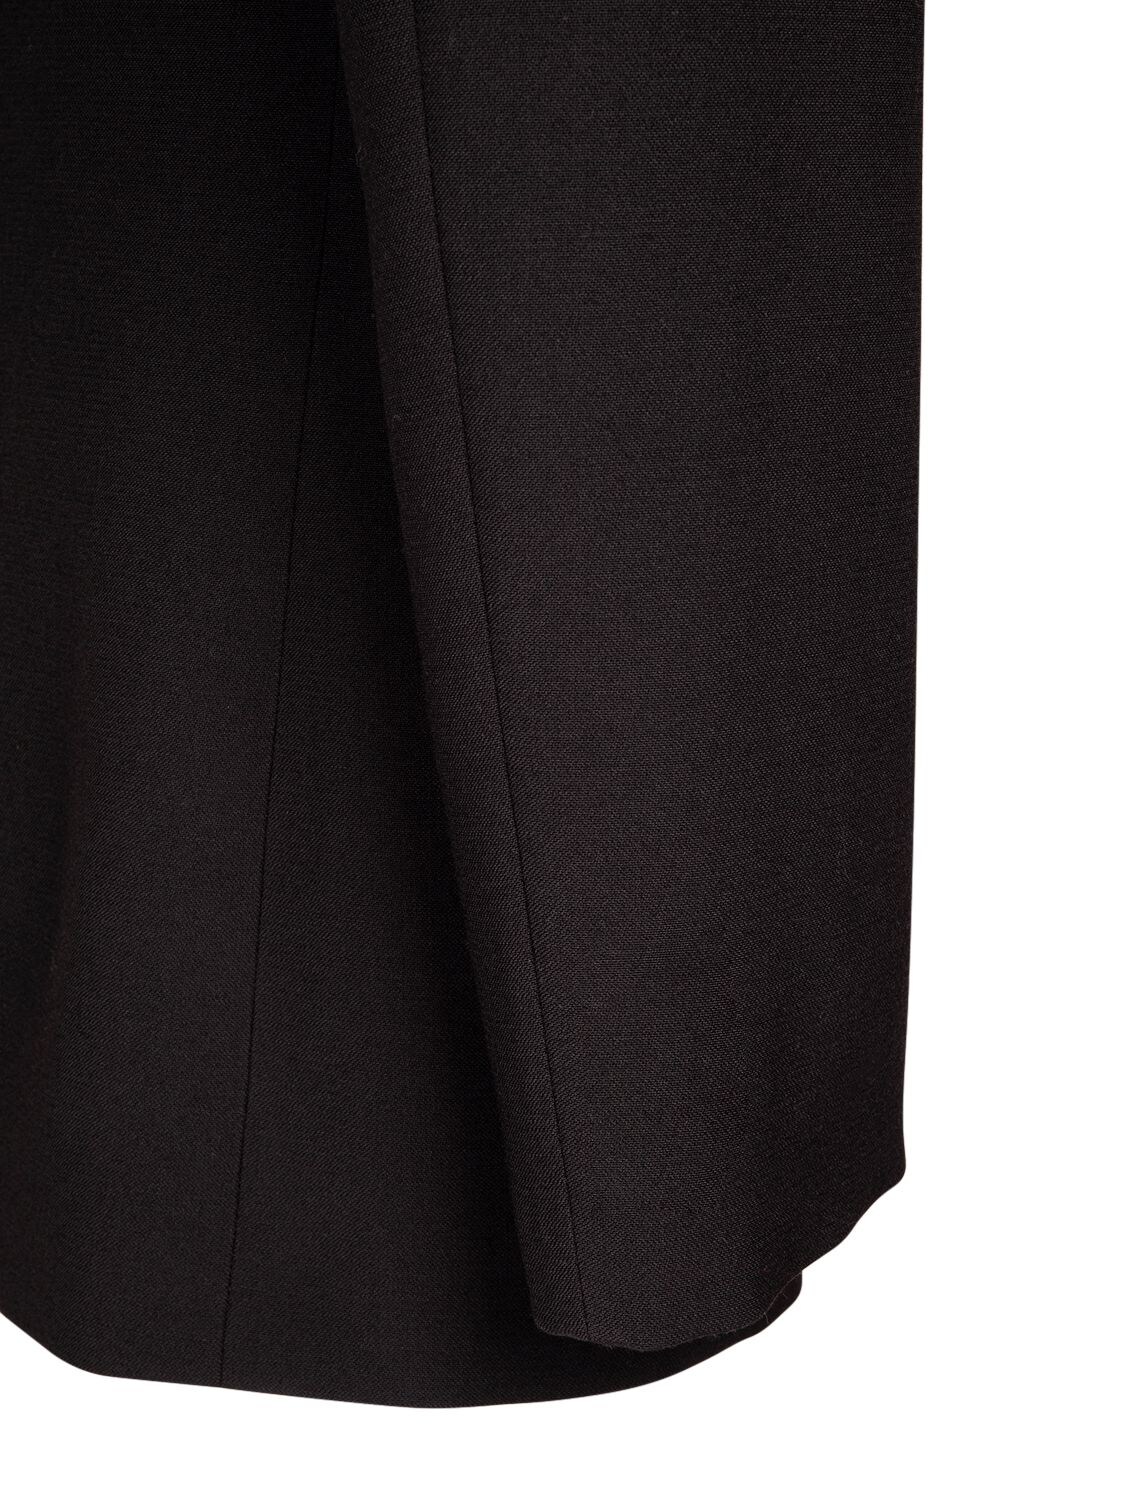 MAISON MARGIELA Wool Blend Faille Suit | Smart Closet